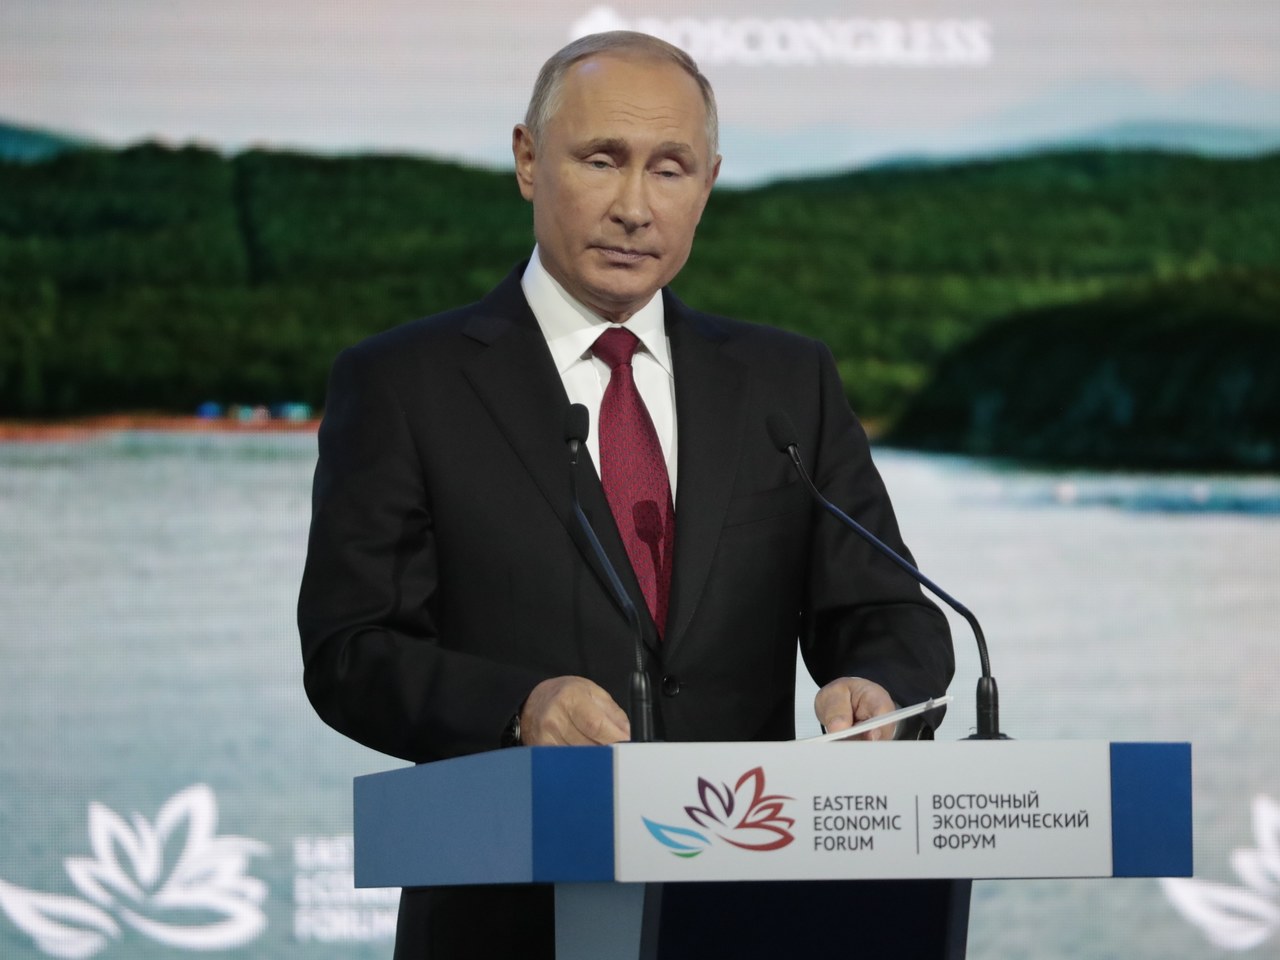 Putin zaproponował Japonii zawarcie traktatu pokojowego